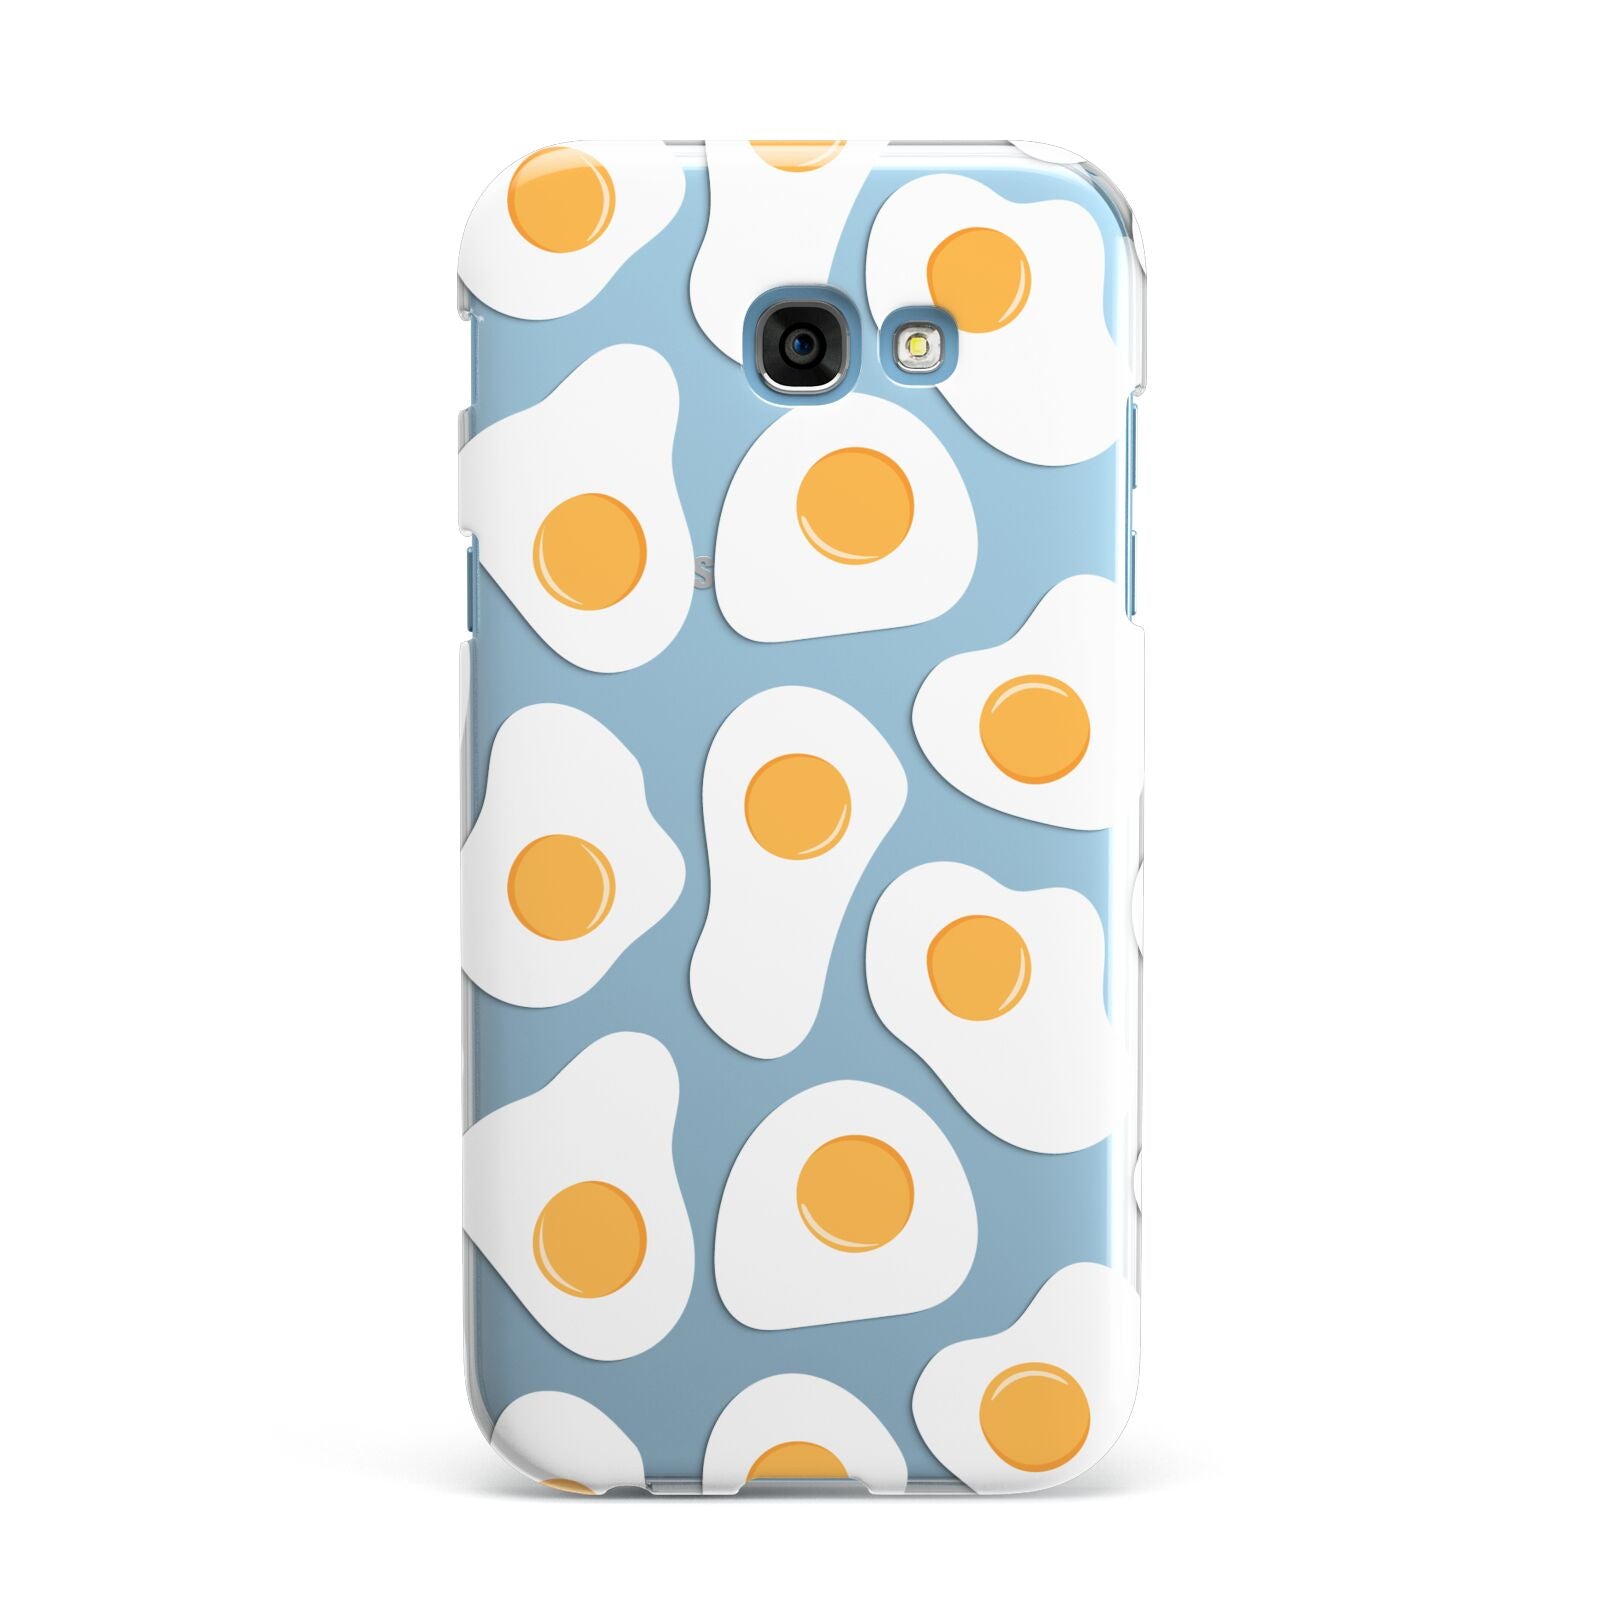 Fried Egg Samsung Galaxy A7 2017 Case